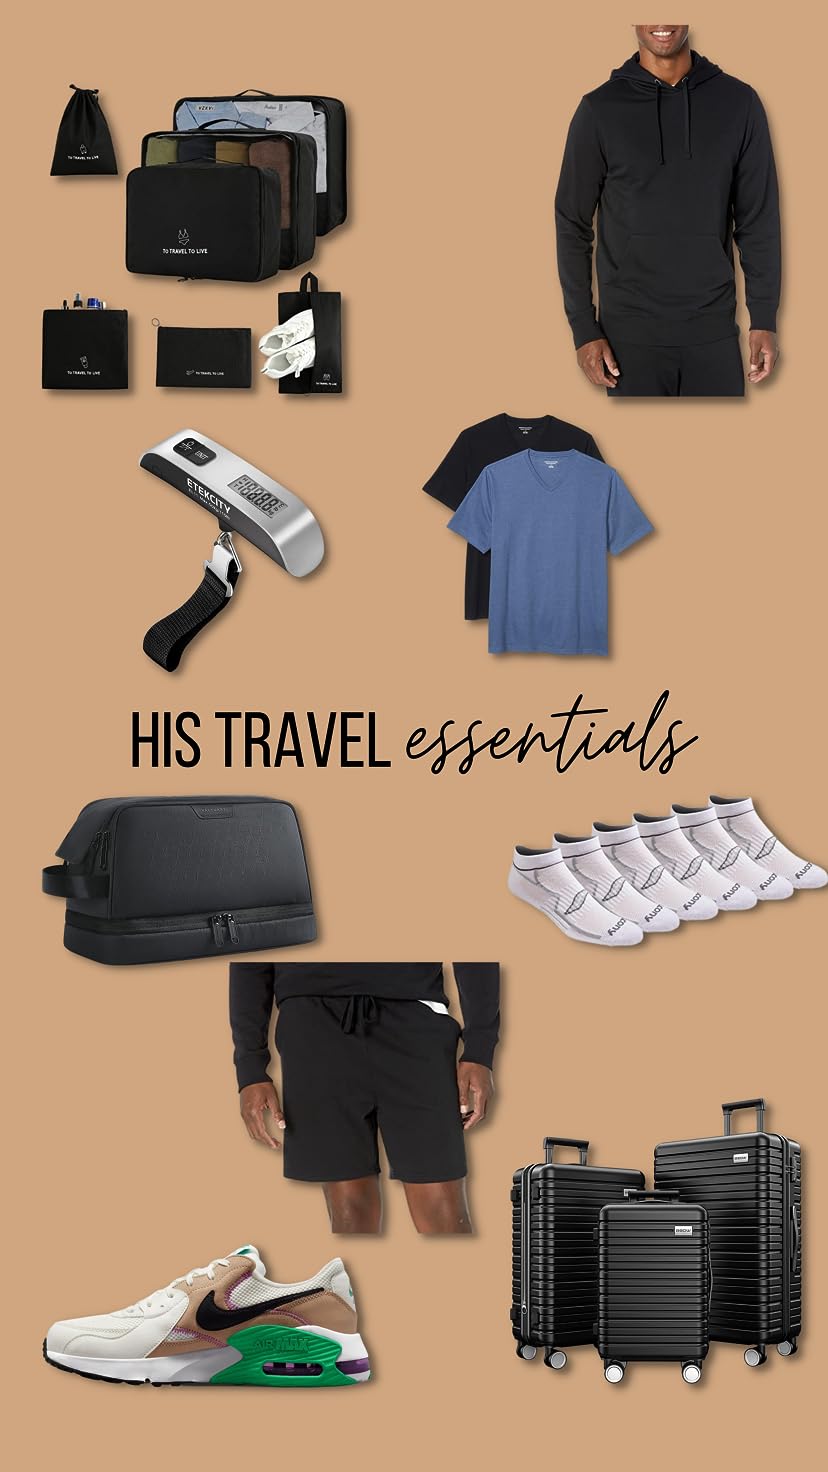 Travel essentials for him! #founditonamazon